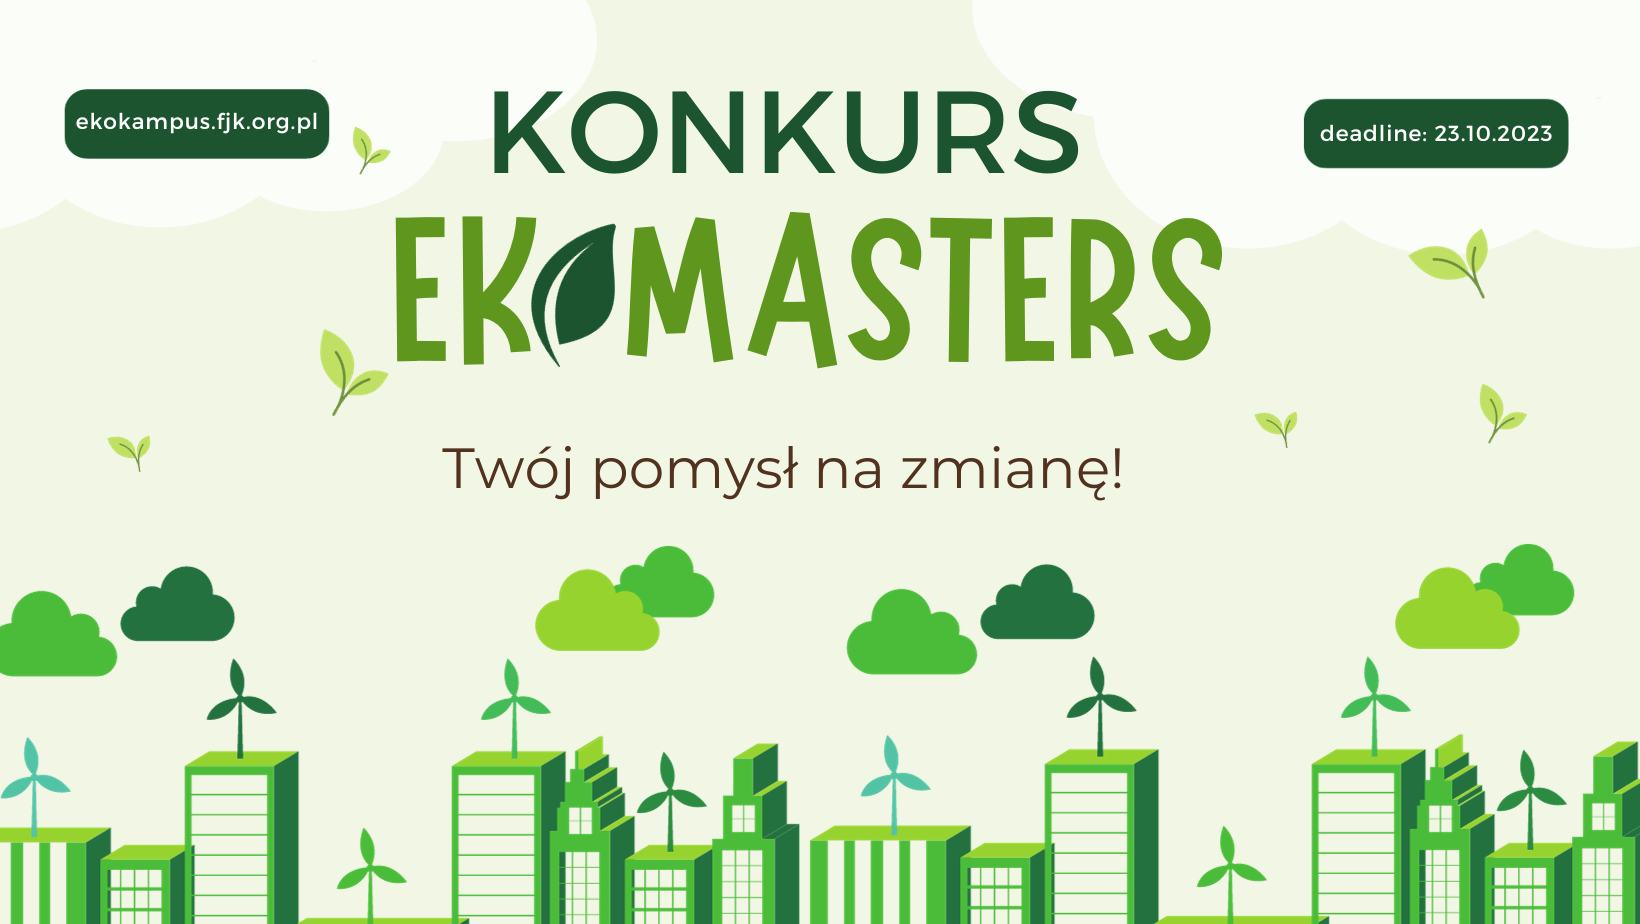 zielona grafika przedstawiająca budynki z farmami wiatrowymi na dachach; na grafice napisy: Konkurs Ekomasters. Twój pomysł na zmianę! ekokampus.fjk.org.pl Deadline: 23.10.2023